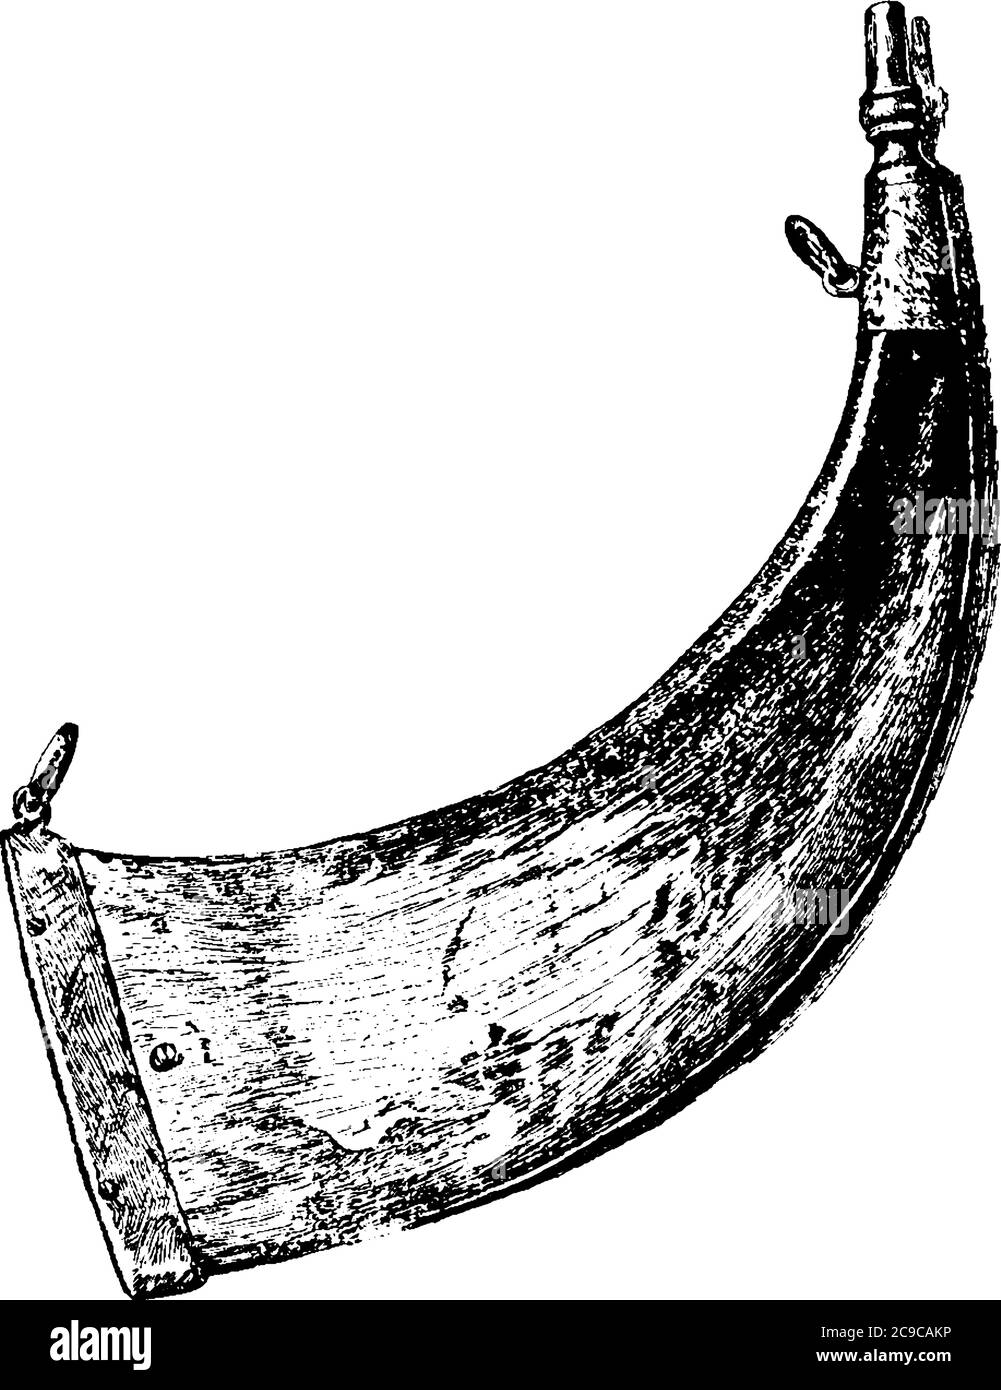 Une représentation typique de la corne de poudre, un ballon de poudre fait à partir de la corne des animaux, habituellement à partir d'un boeuf ou d'une vache, un dessin de ligne vintage ou un gravin Illustration de Vecteur